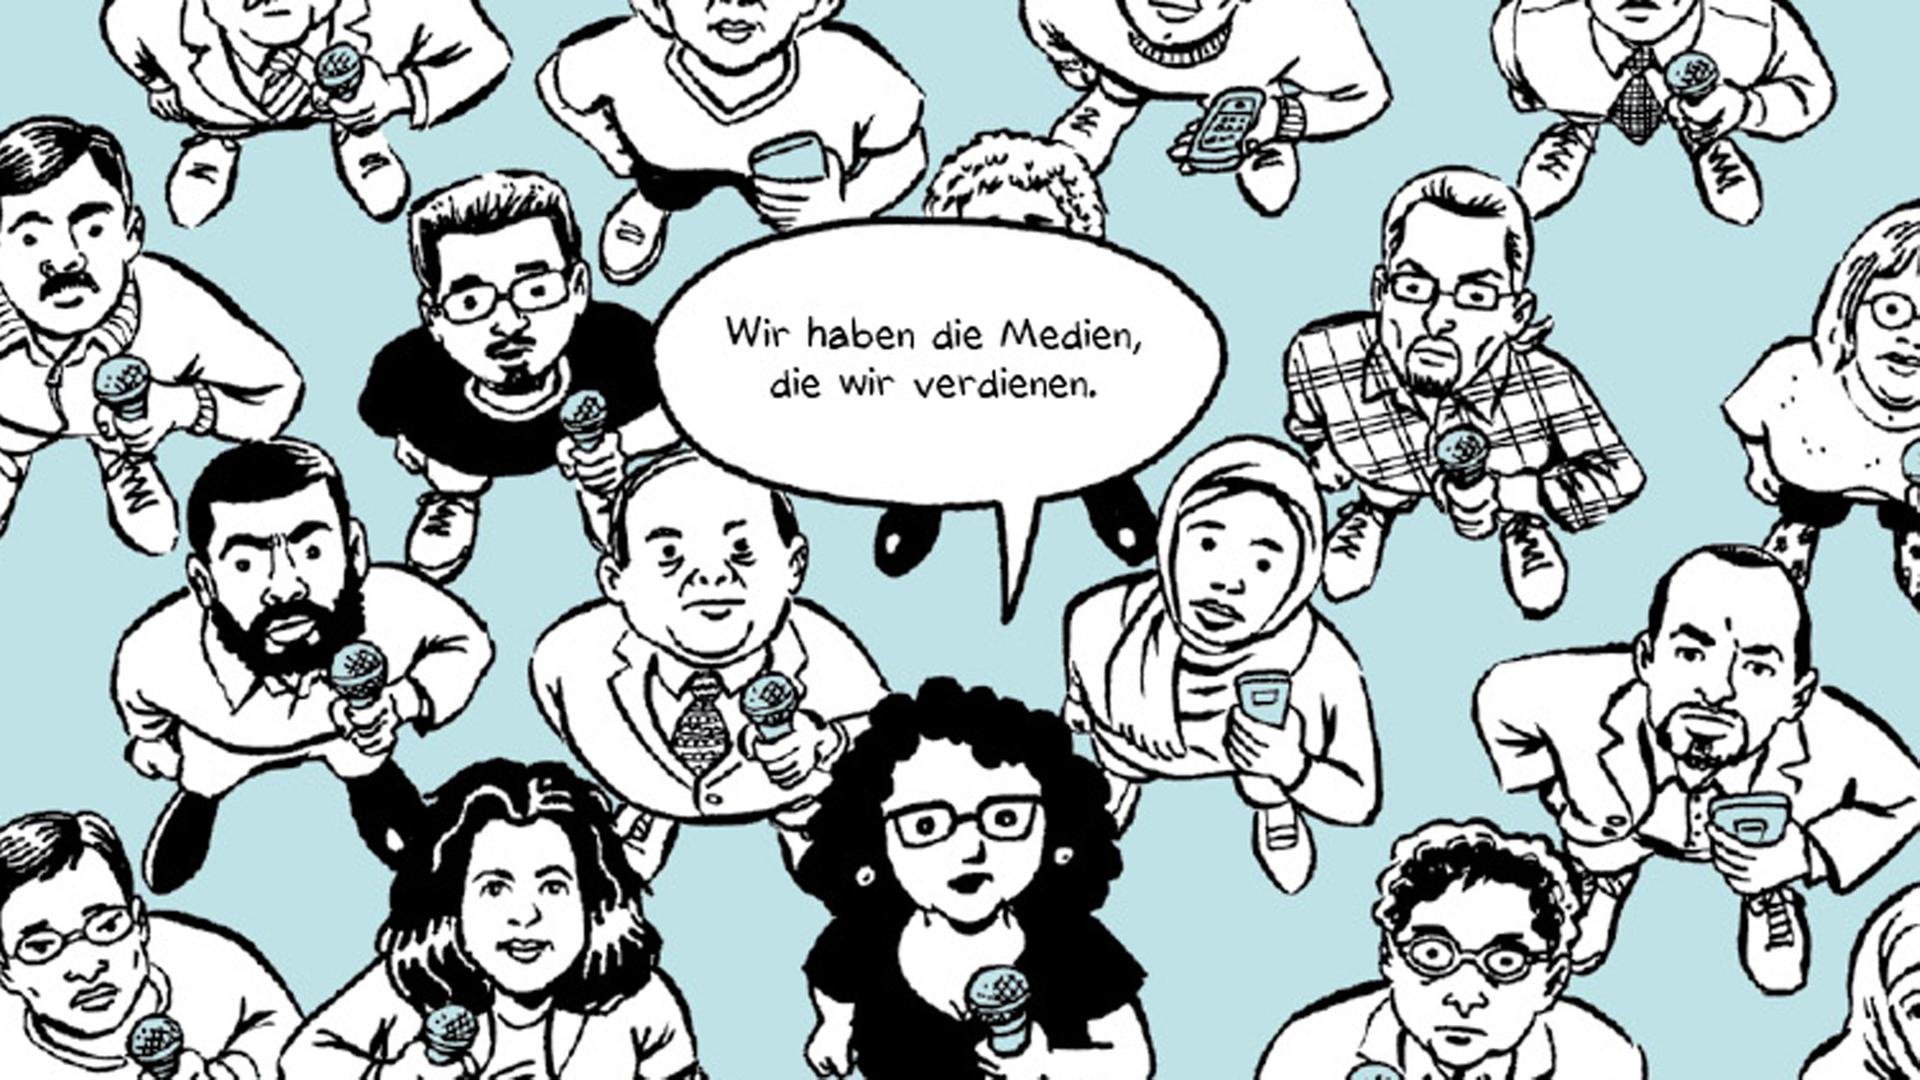 Ausschnitt aus der deutschen Übersetzung der Graphic Novel "Der Beeinflussungsapparat", geschrieben von Brooke Gladstone und gezeichnet von Josh Neufeld